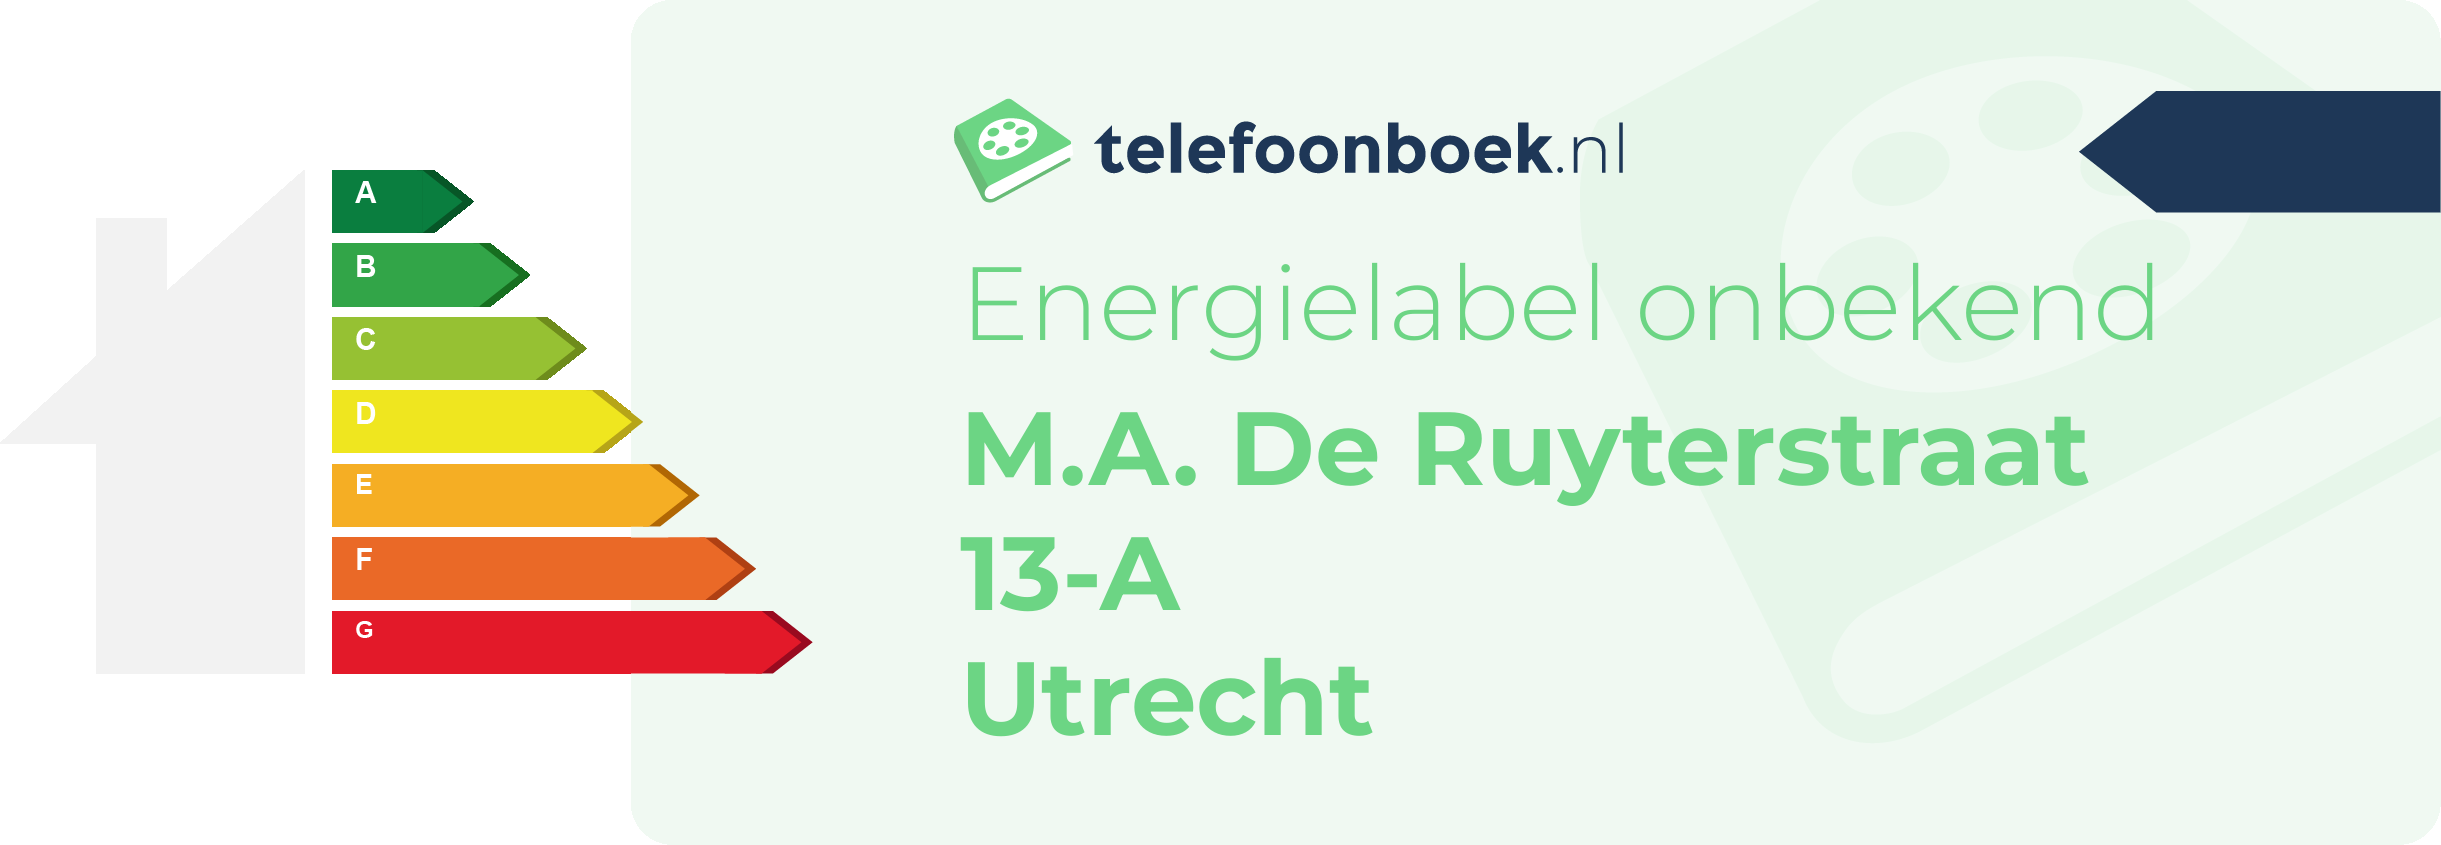 Energielabel M.A. De Ruyterstraat 13-A Utrecht